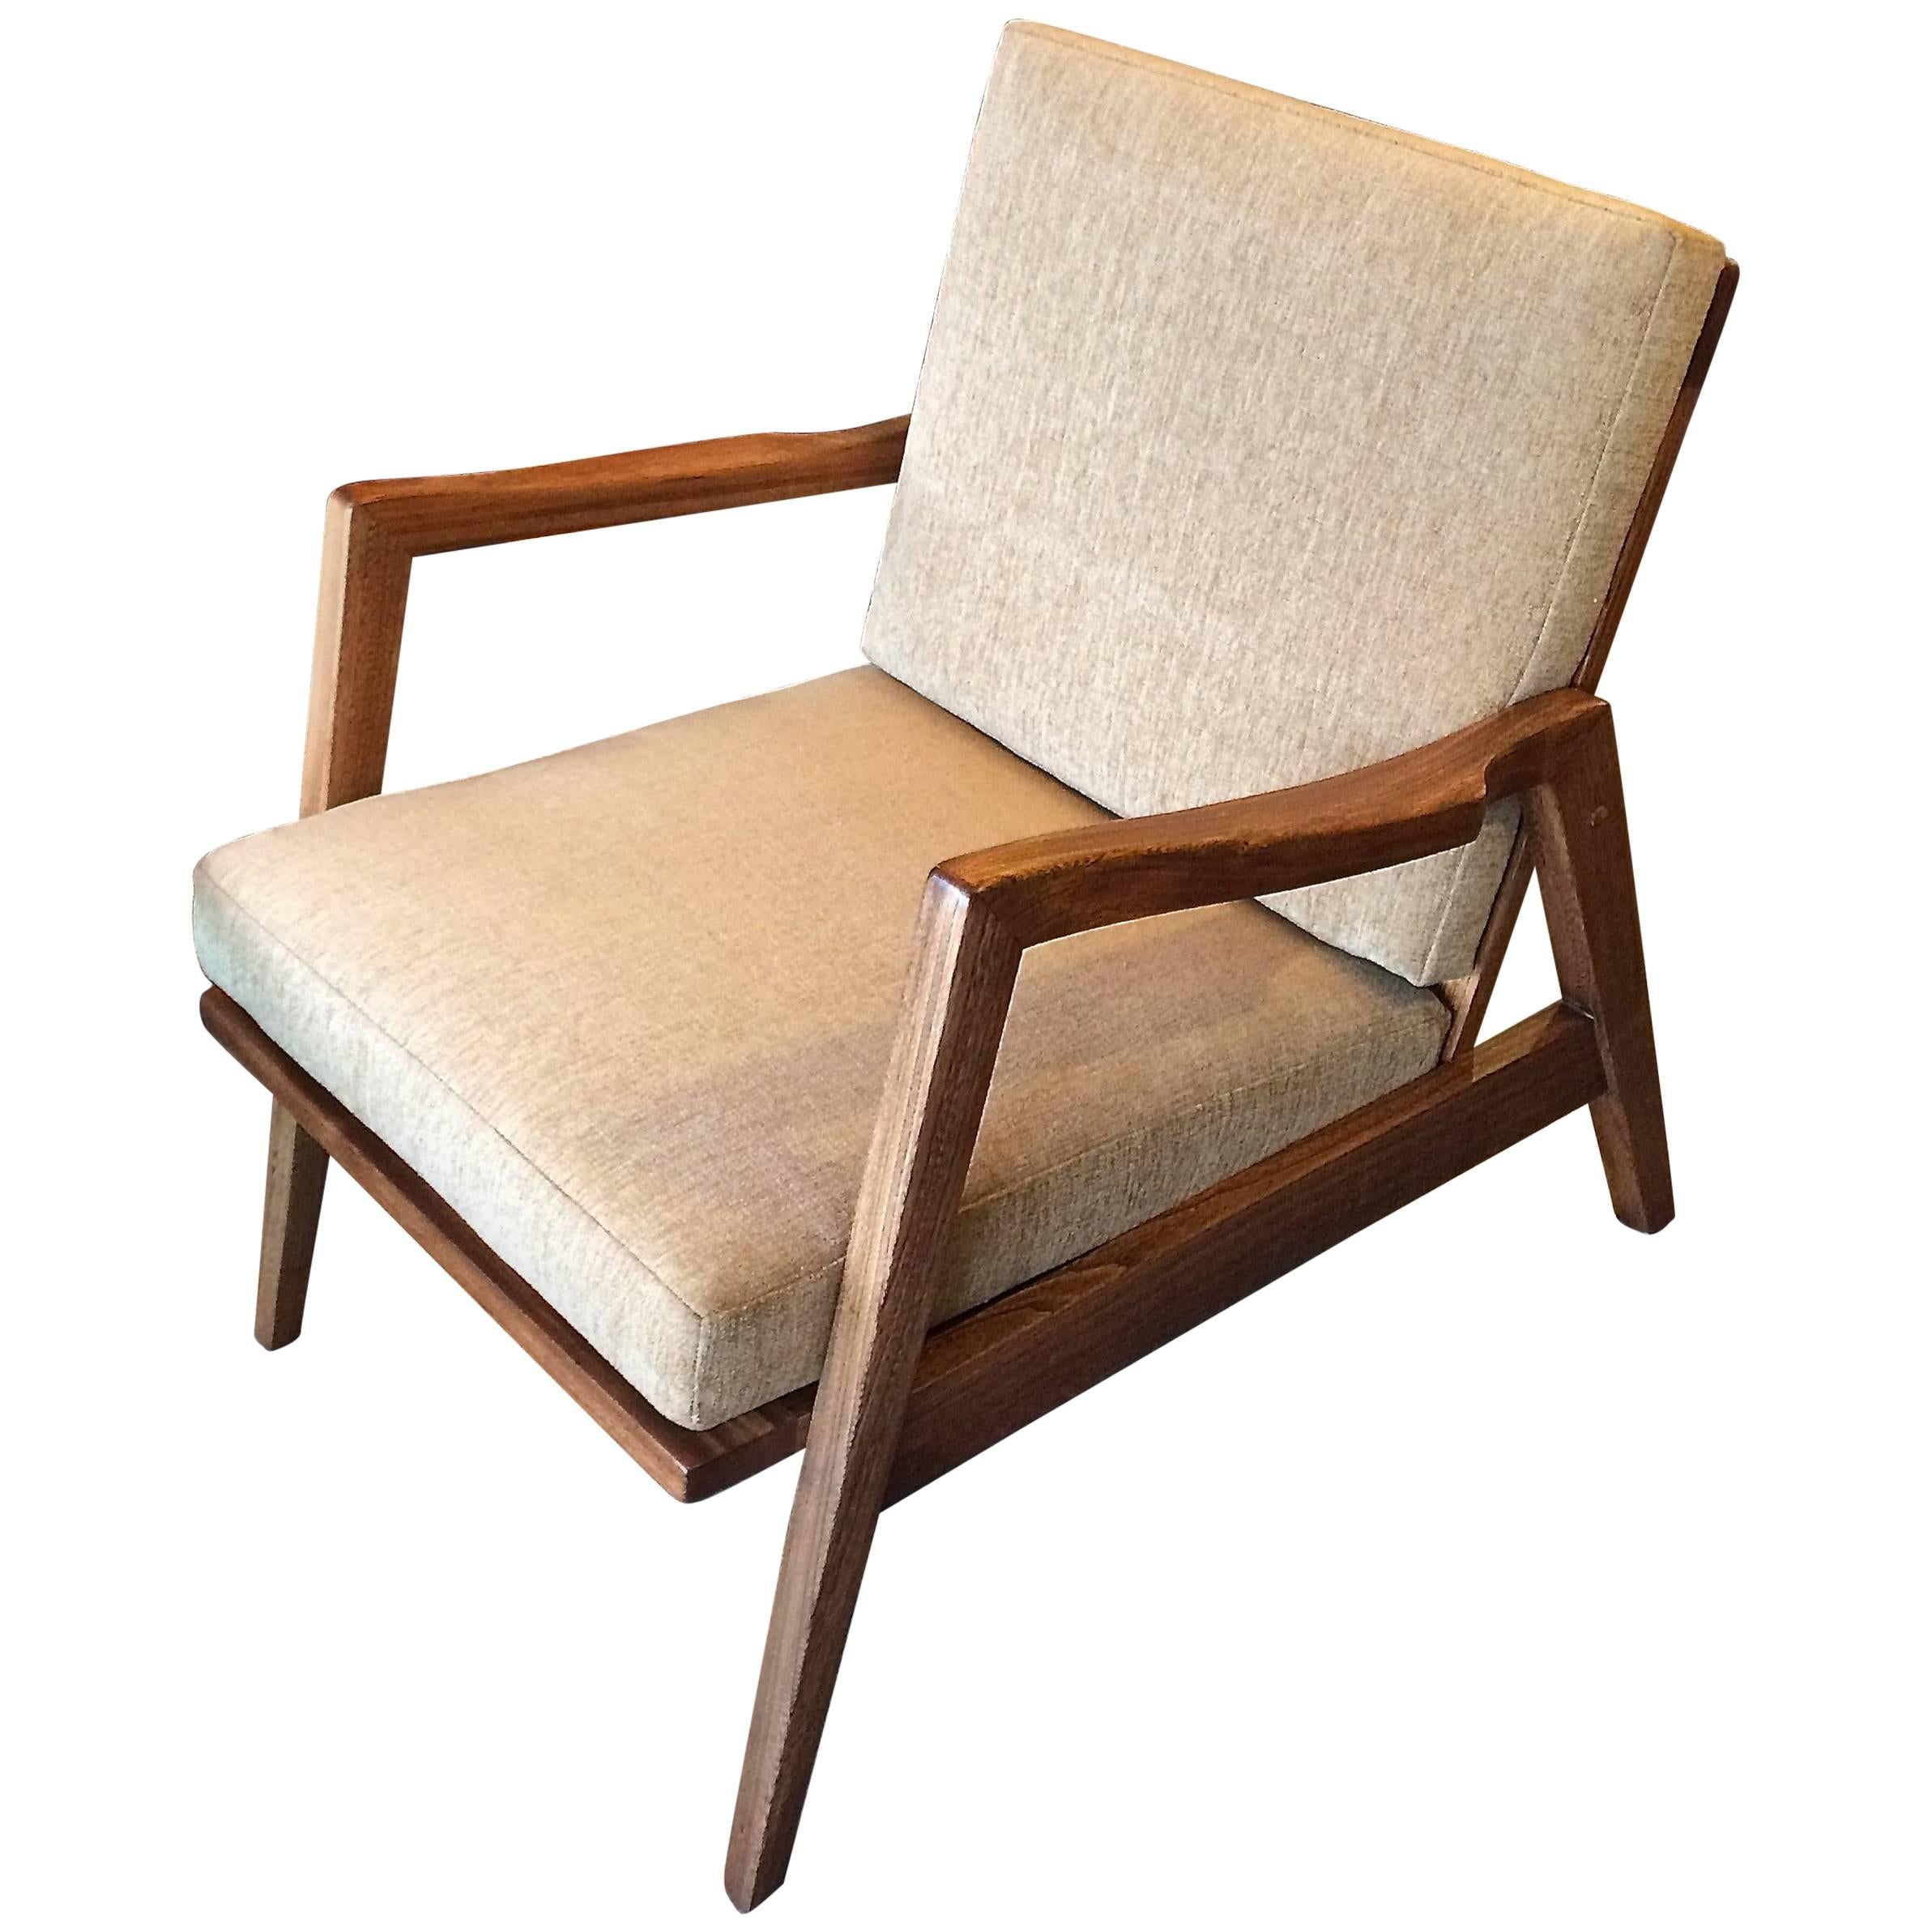 Sculptural Mid-Century Modern Birch Lounge Chair